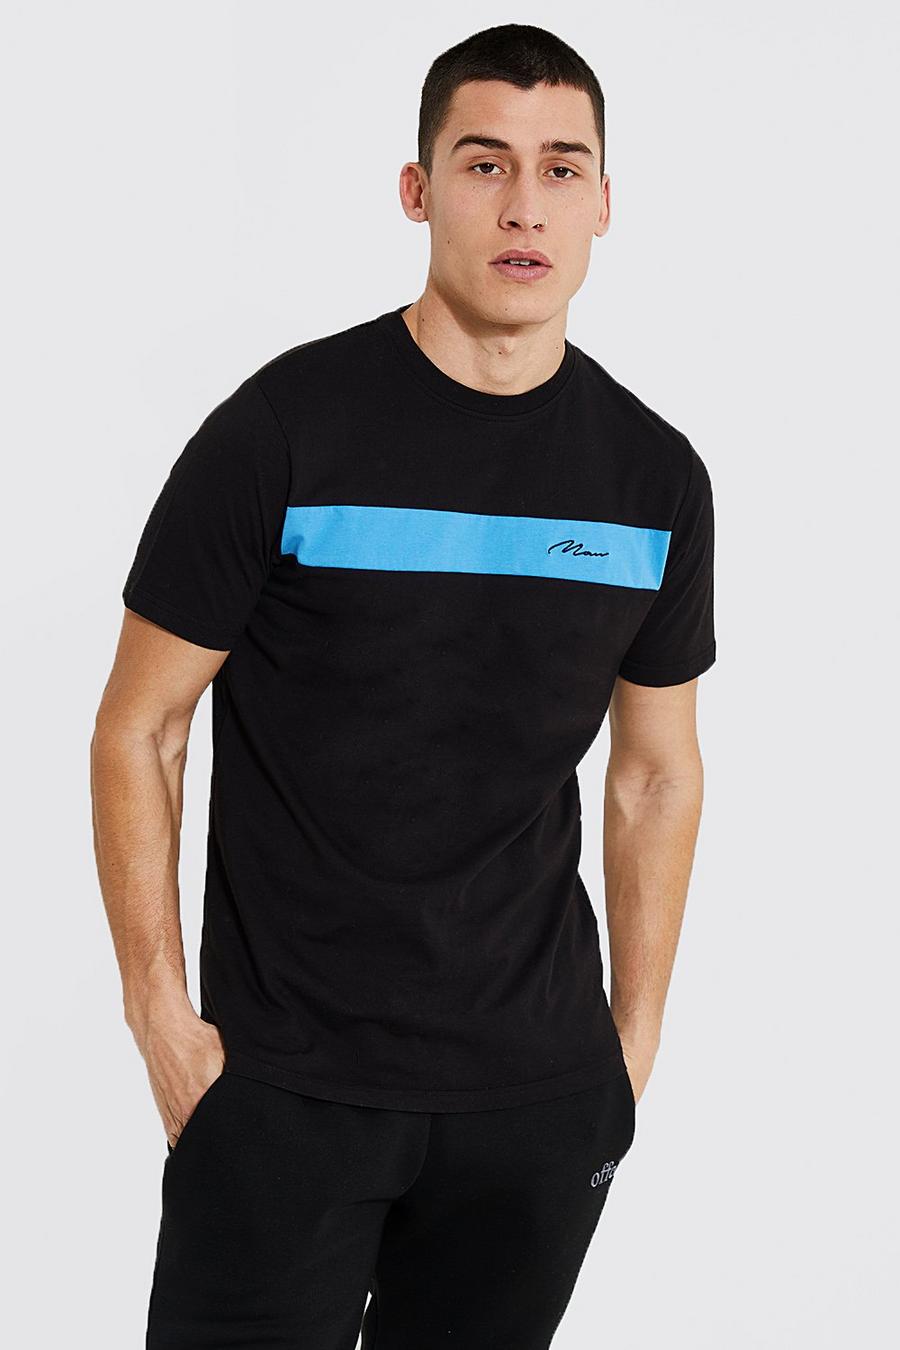 Camiseta Plus Con Firma Man Y Colores En Bloque Boohoo de Denim de color Negro Mujer Ropa de Trajes de 